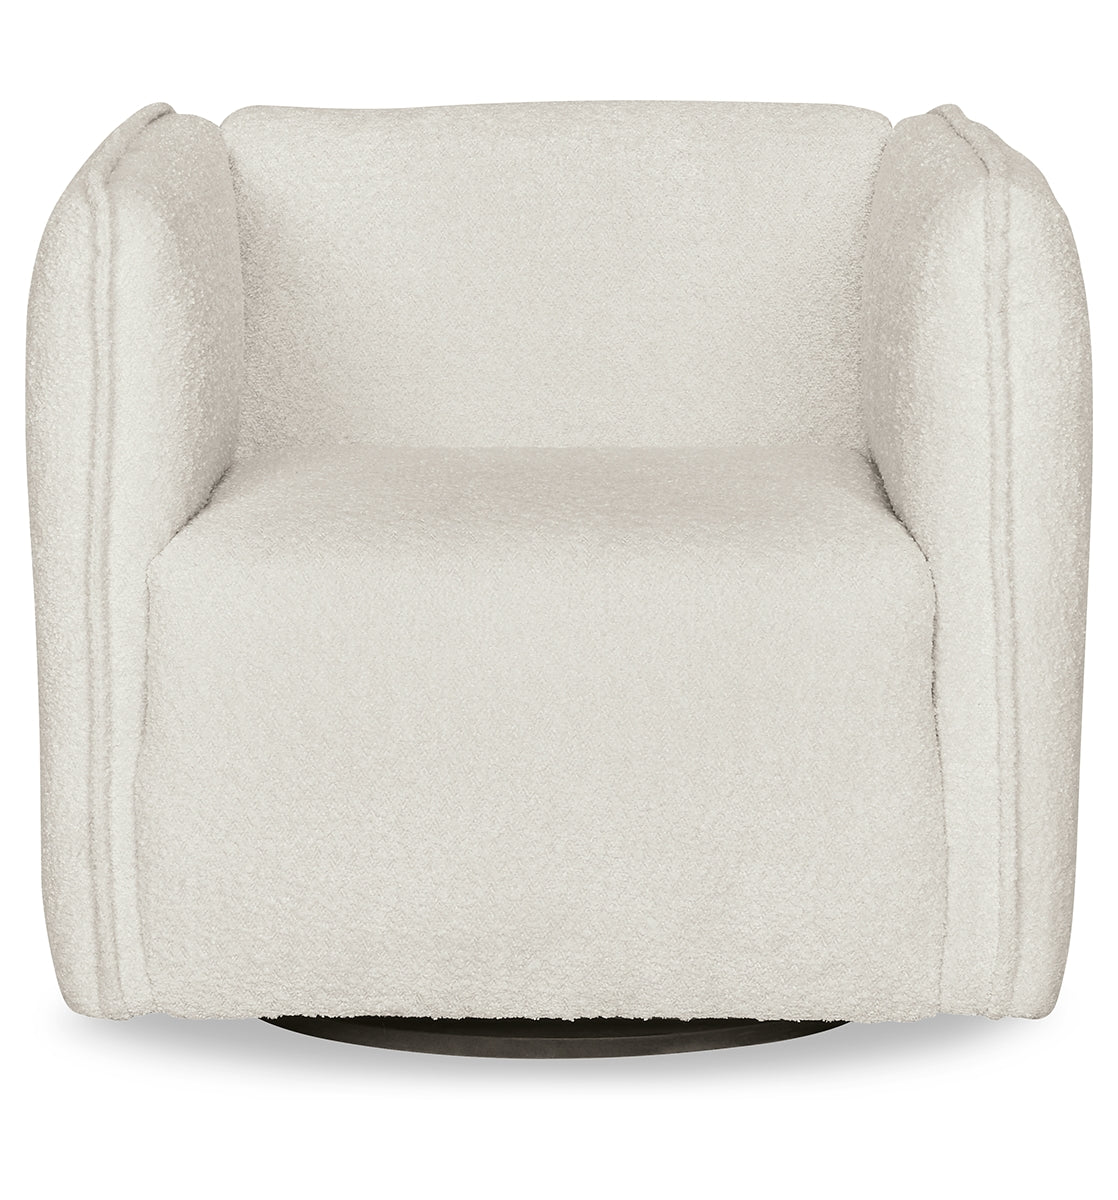 Lonoke Swivel Accent Chair